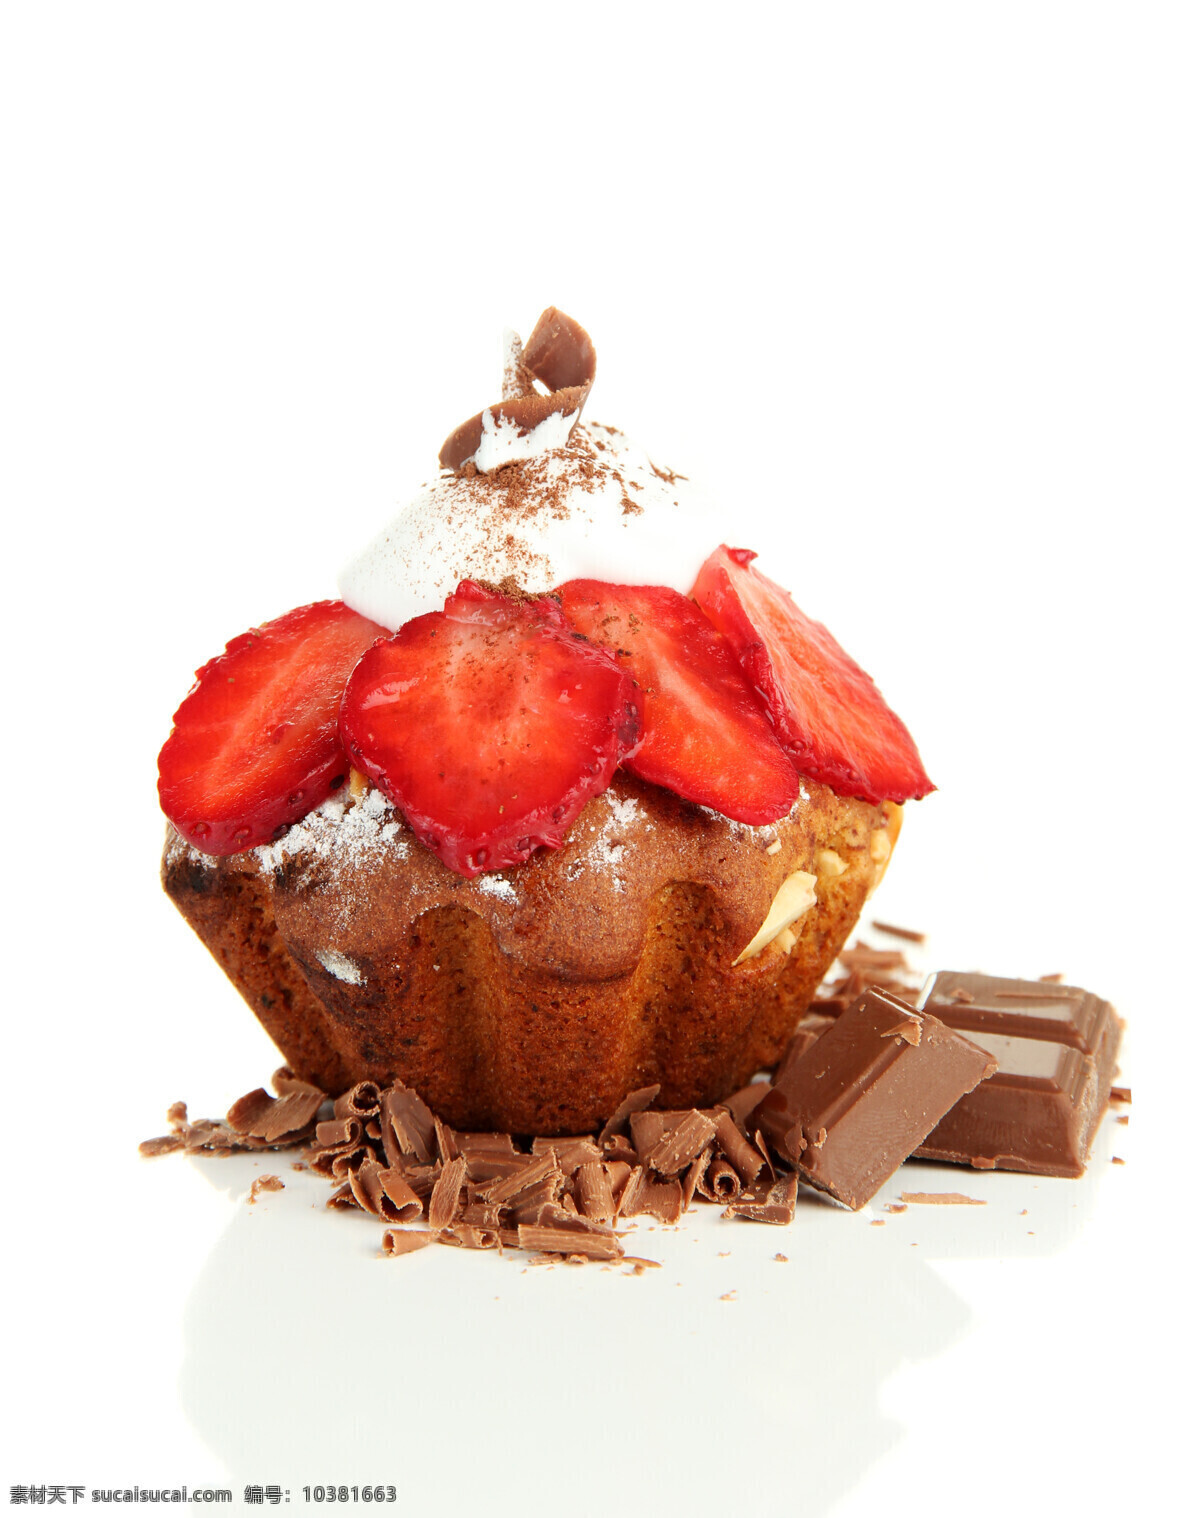 巧克力 草莓 蛋糕 甜点 食物 面包 生日蛋糕图片 餐饮美食